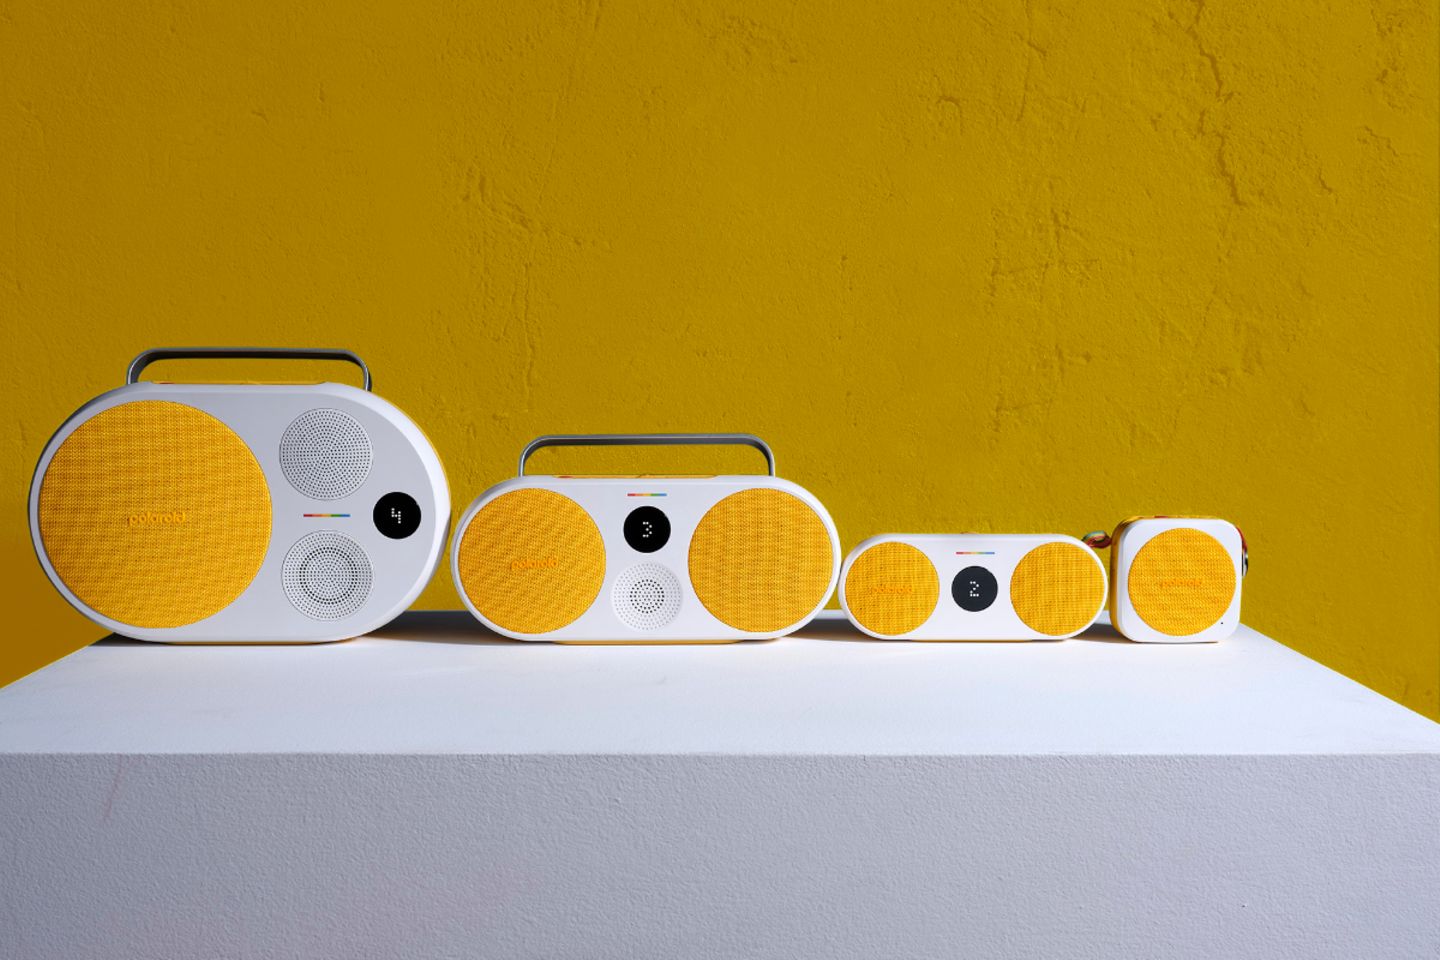 Lautsprecher verschiedener Größen vor gelben Hintergrund